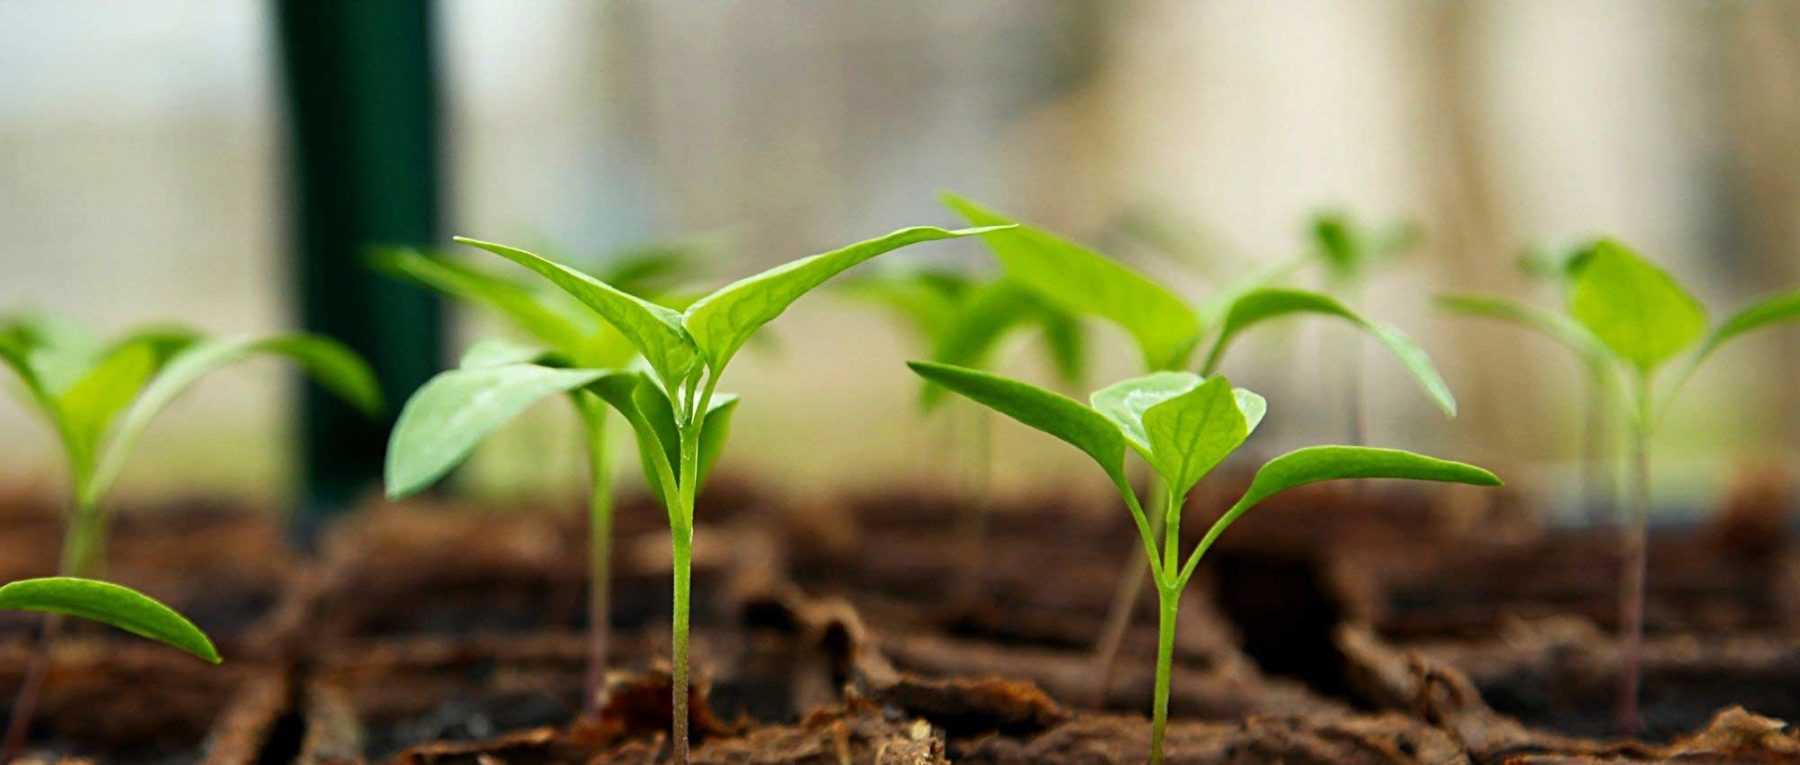 Tapis chauffant : une bonne solution pour protéger ses semis ?